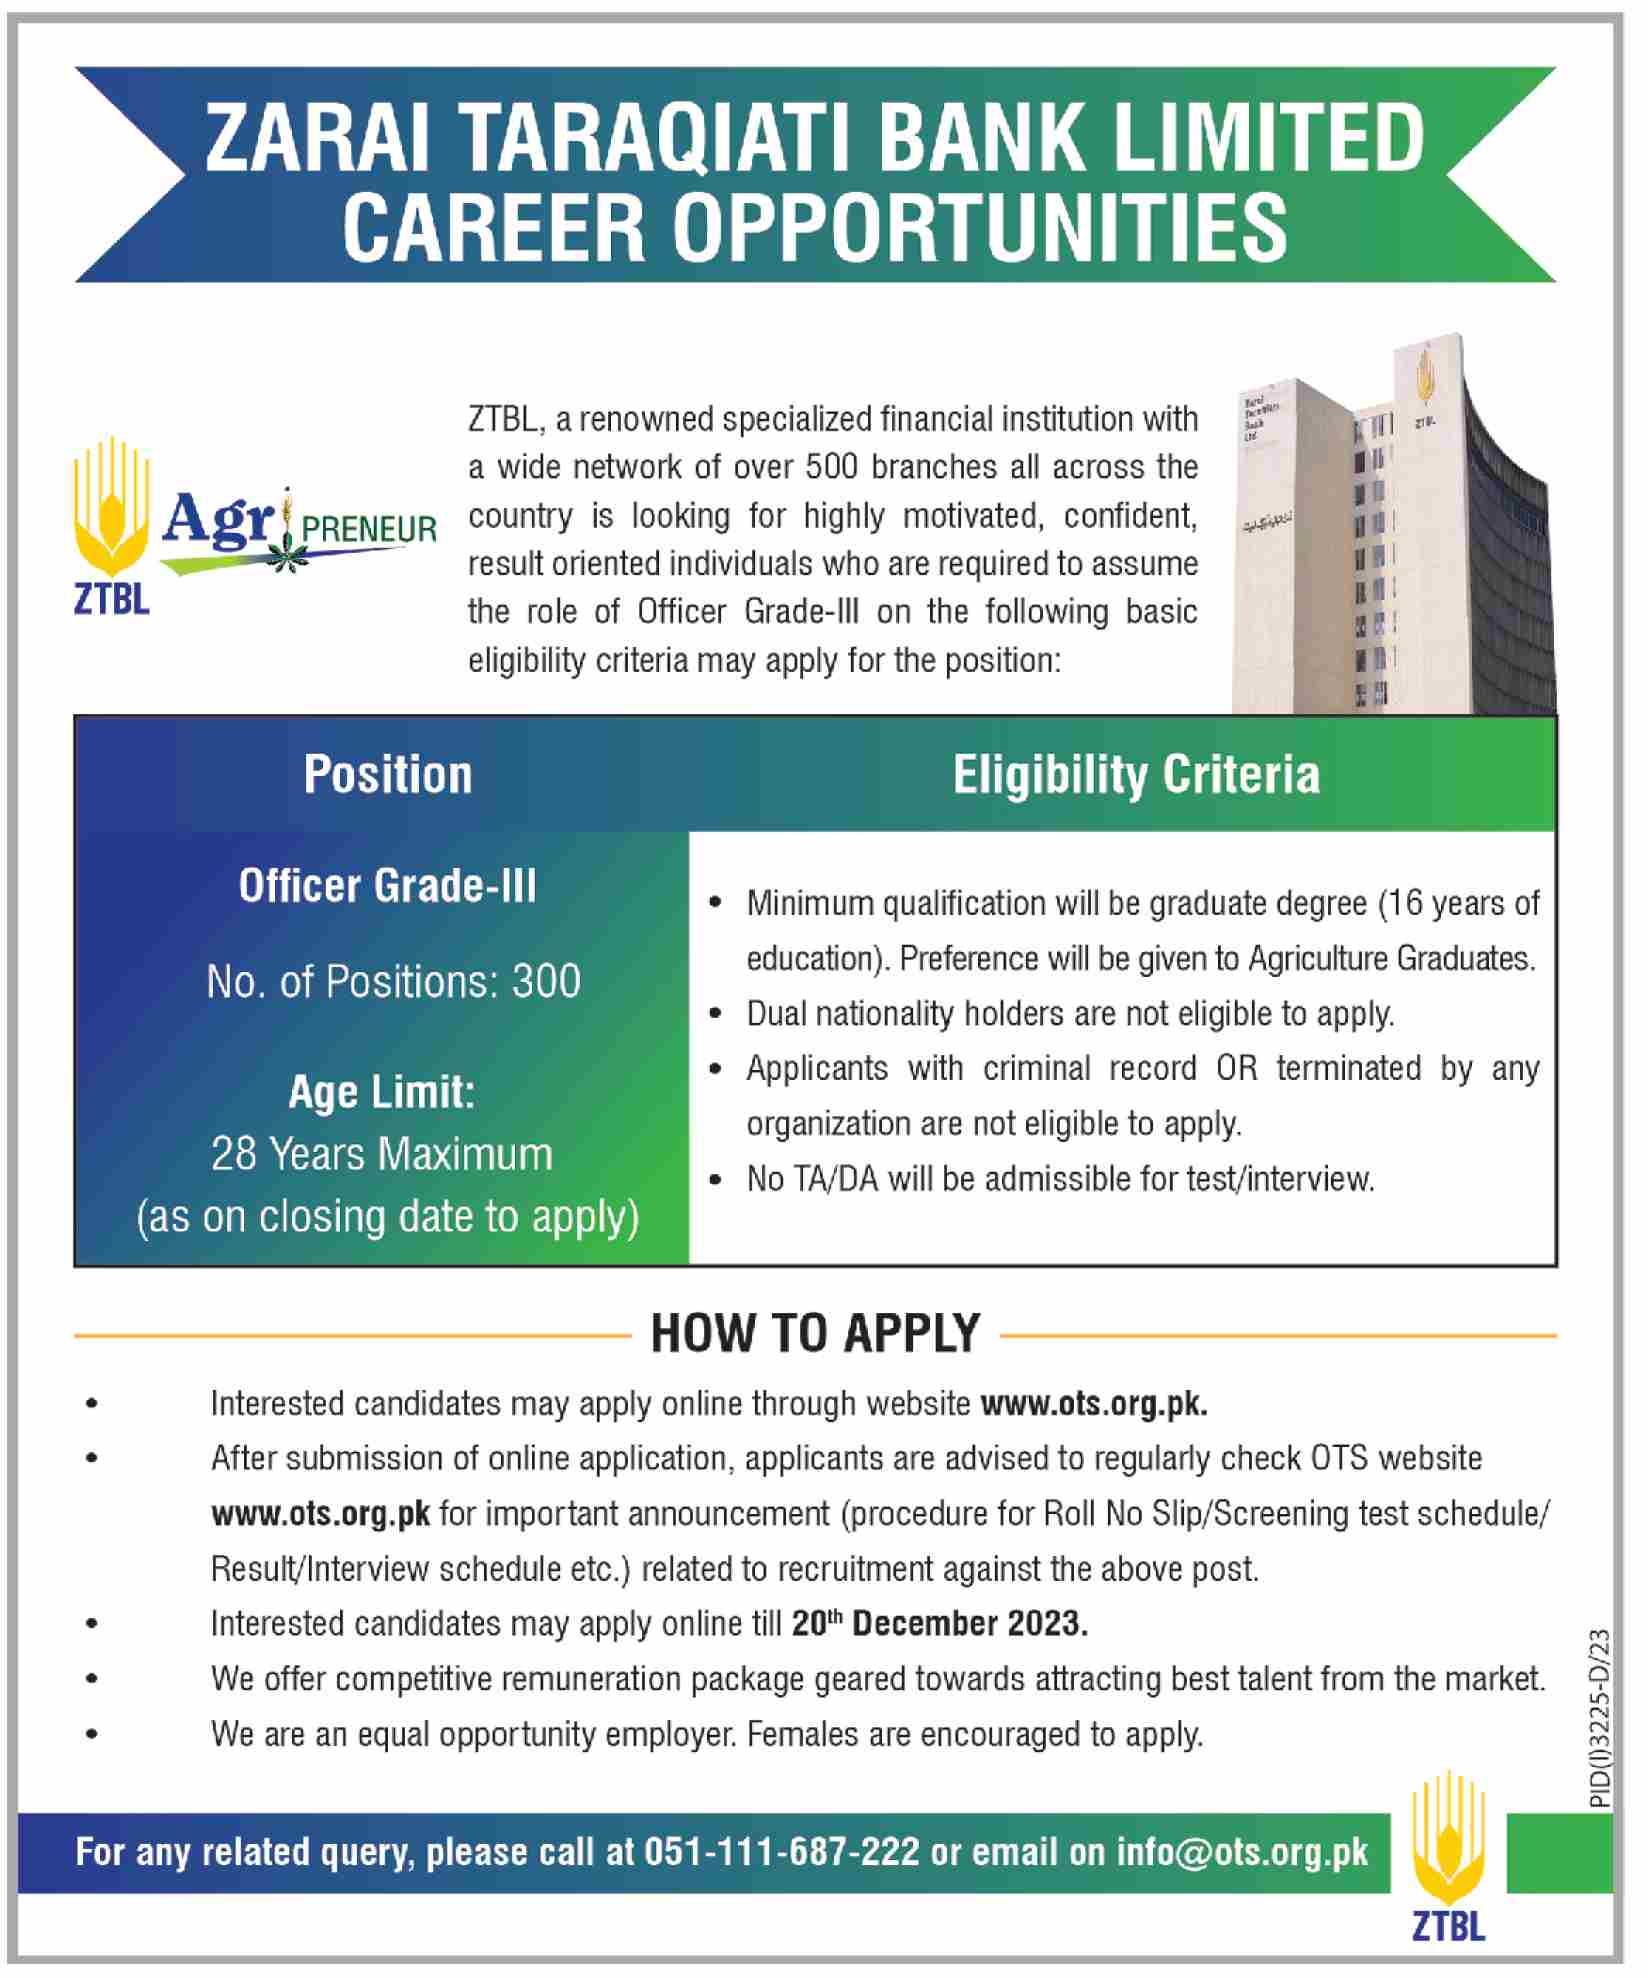 ZTBL Zarai Taraqiati Bank Limited Career Opportunities Job